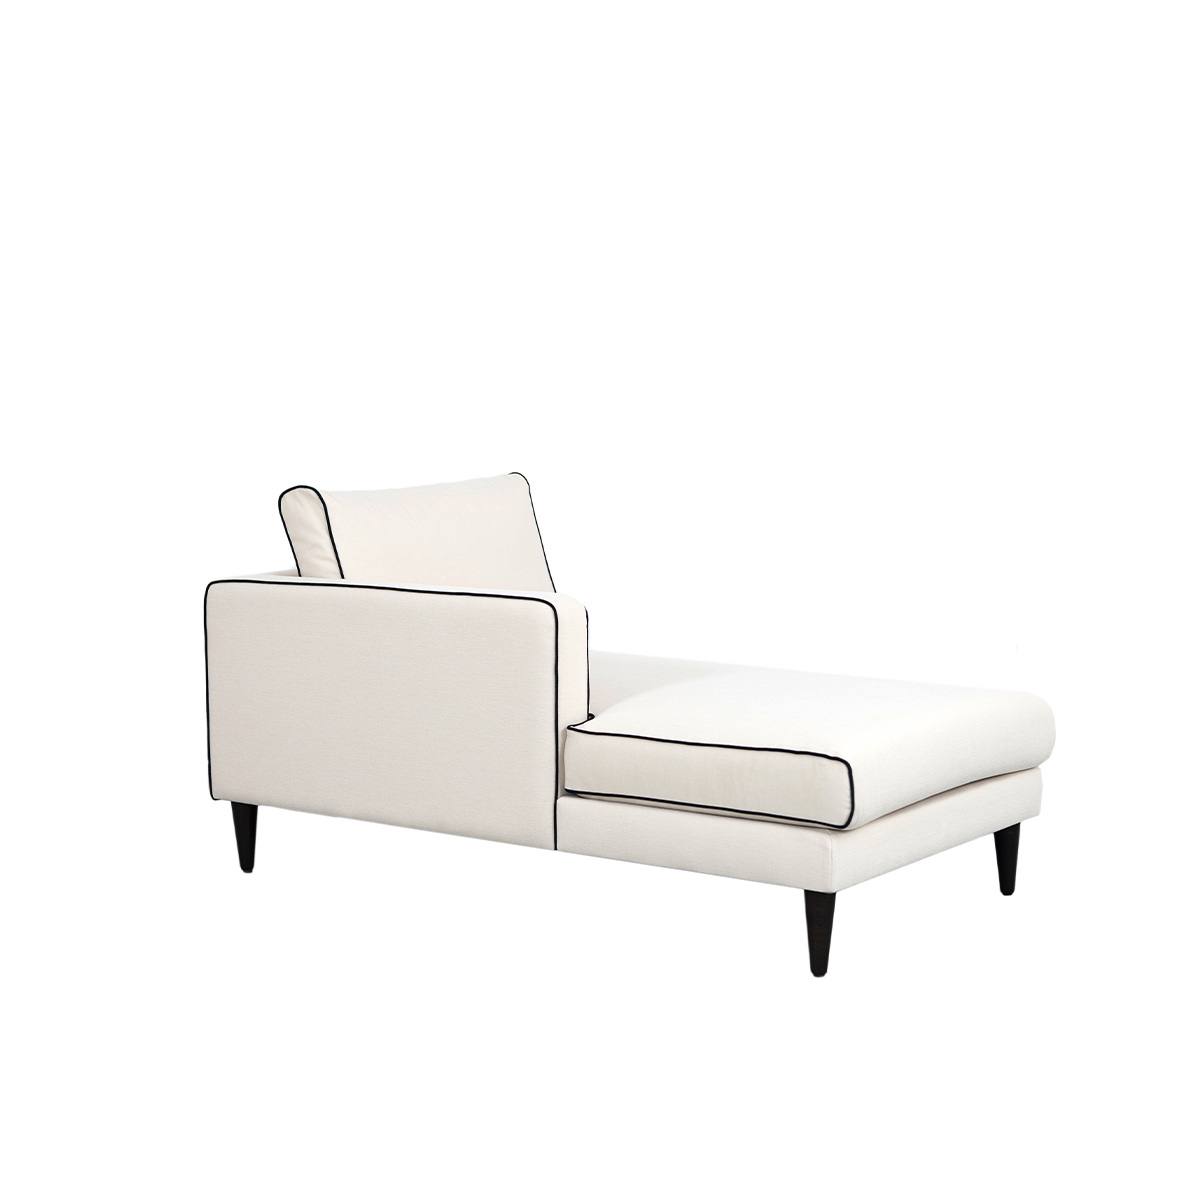 Noa sofa - Left armrest, Different Sizes - Cotton - image 3